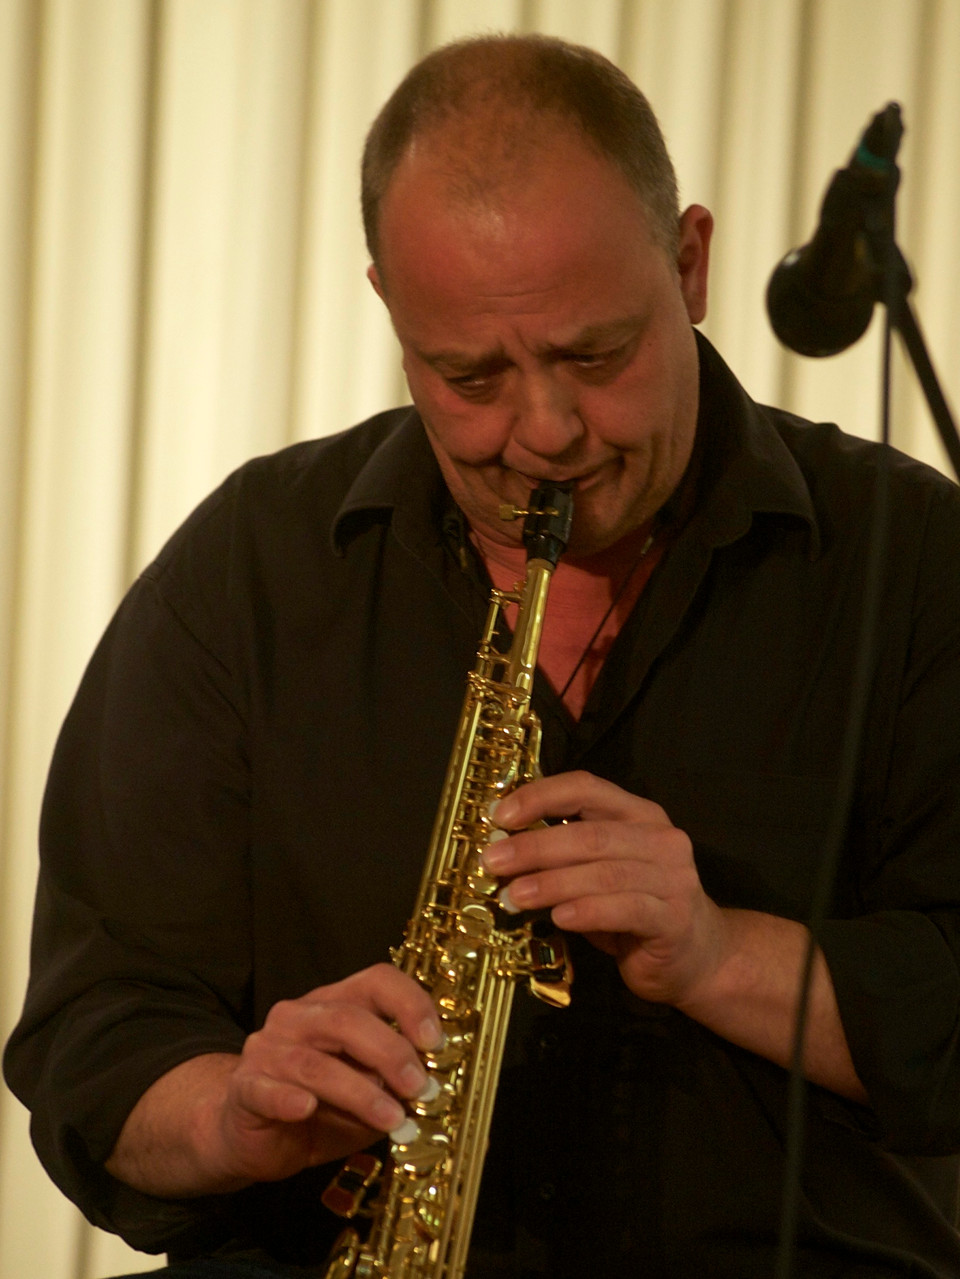 Sebastian (Seppl) Scheil (Saxophon) Die Musiker der Band von ulf hartmann. Livemusik (Singer-Songwriter) aus Braunschweig. Foto: Hans Scheschonk